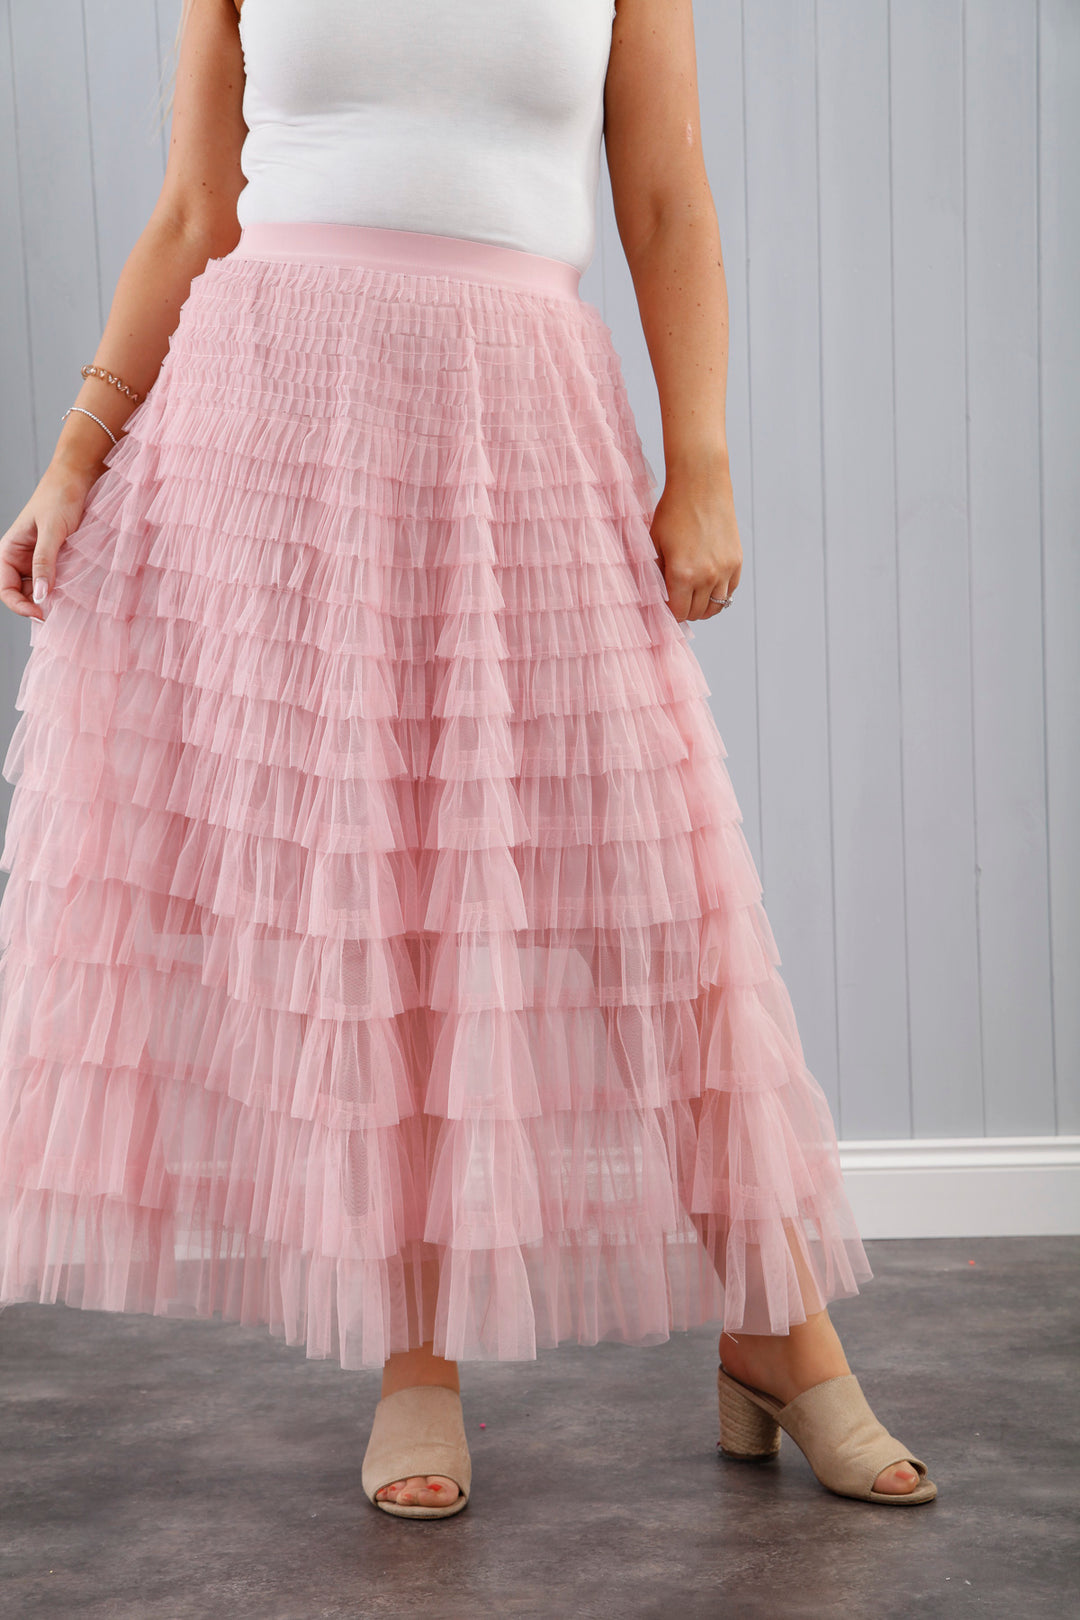 Seraphina Ruffle Skirt Baby Pink